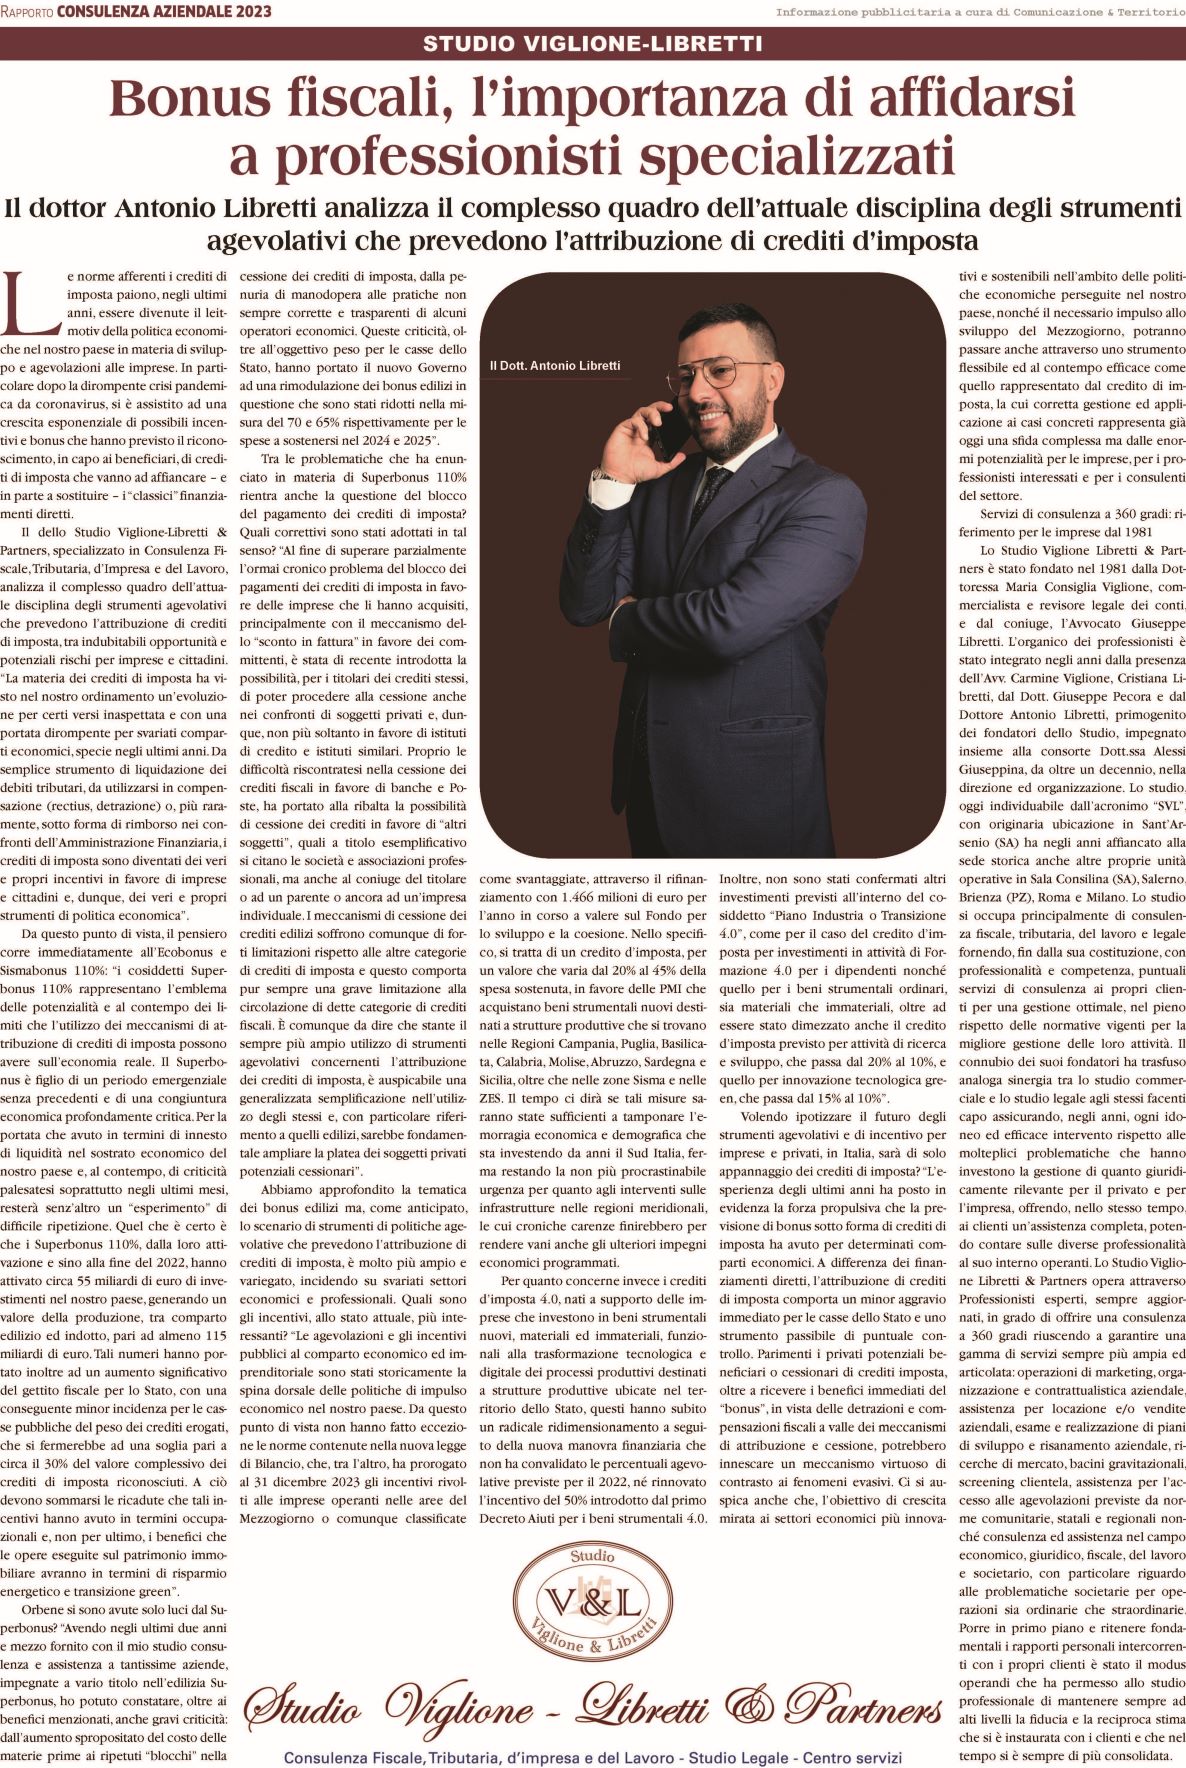 Articolo Di Repubblica – Intervista Al Dott. Antonio Libretti